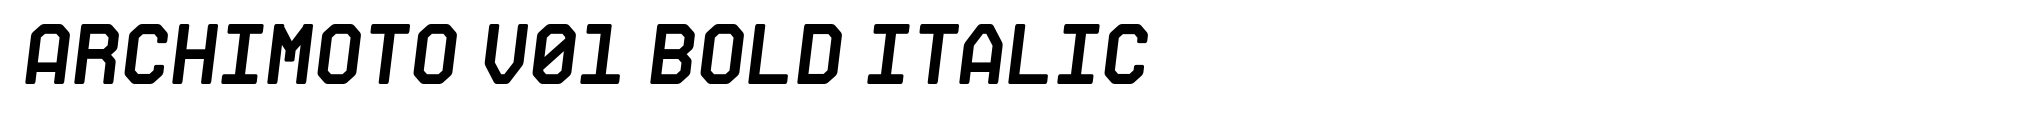 Archimoto V01 Bold Italic image